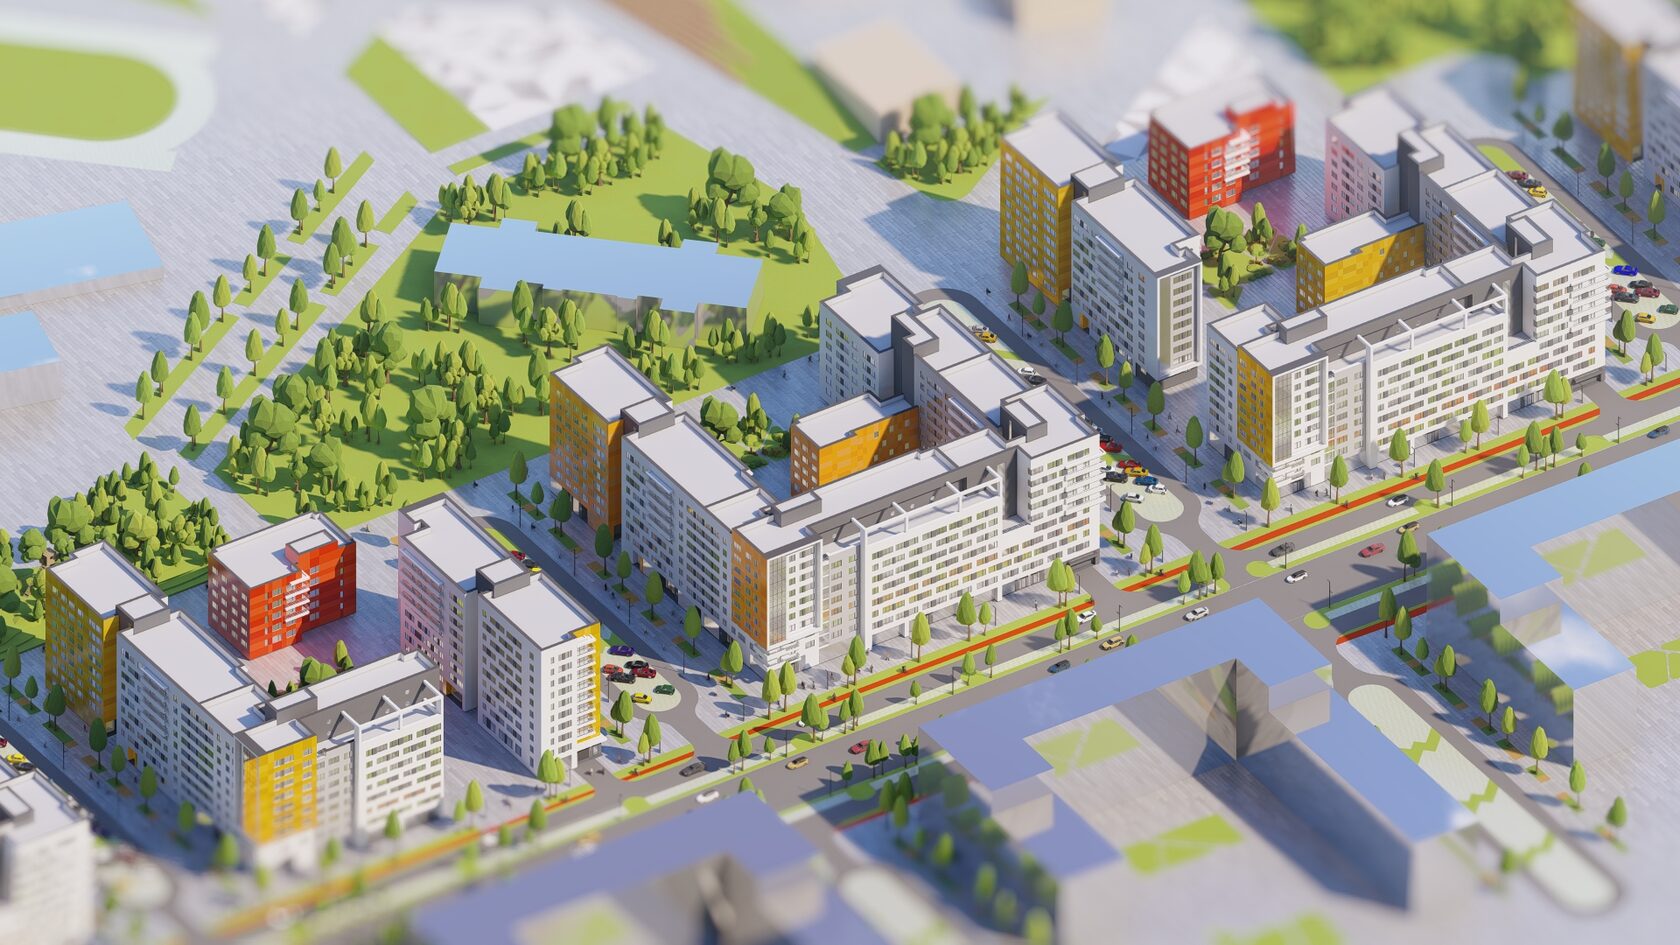 «Технология едет на хайпе». Зачем архитекторы проектируют жилые кварталы в метавселенных